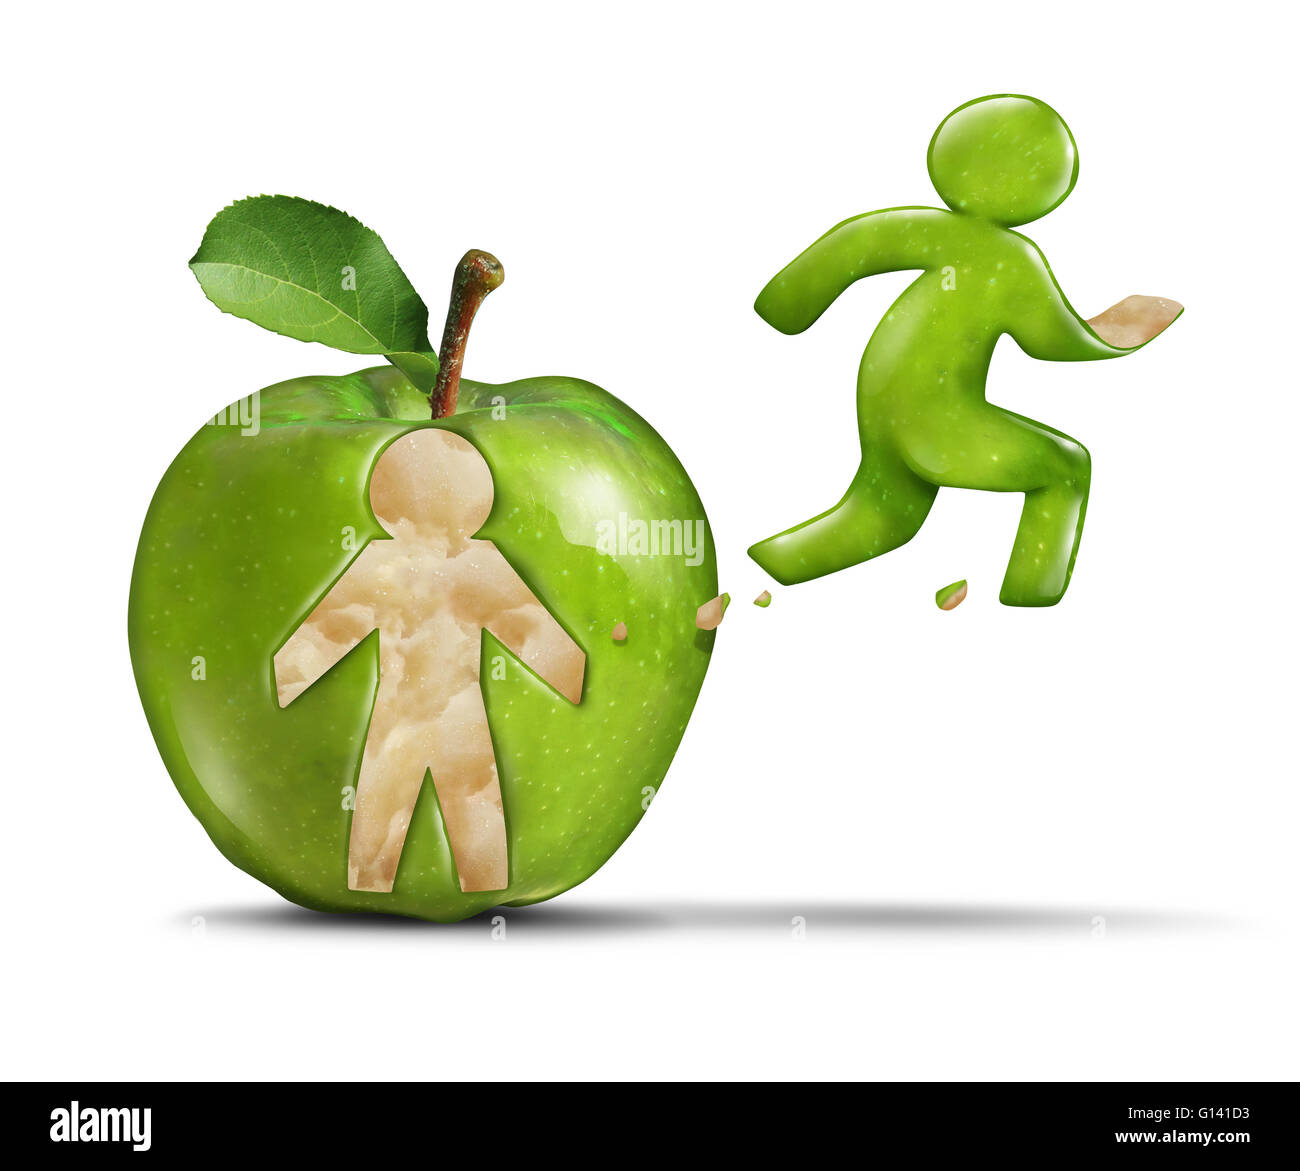 Vie saine et active apple remise en forme comme une pomme verte avec une personne détachée forme la peau du fruit en forme de jogger Banque D'Images